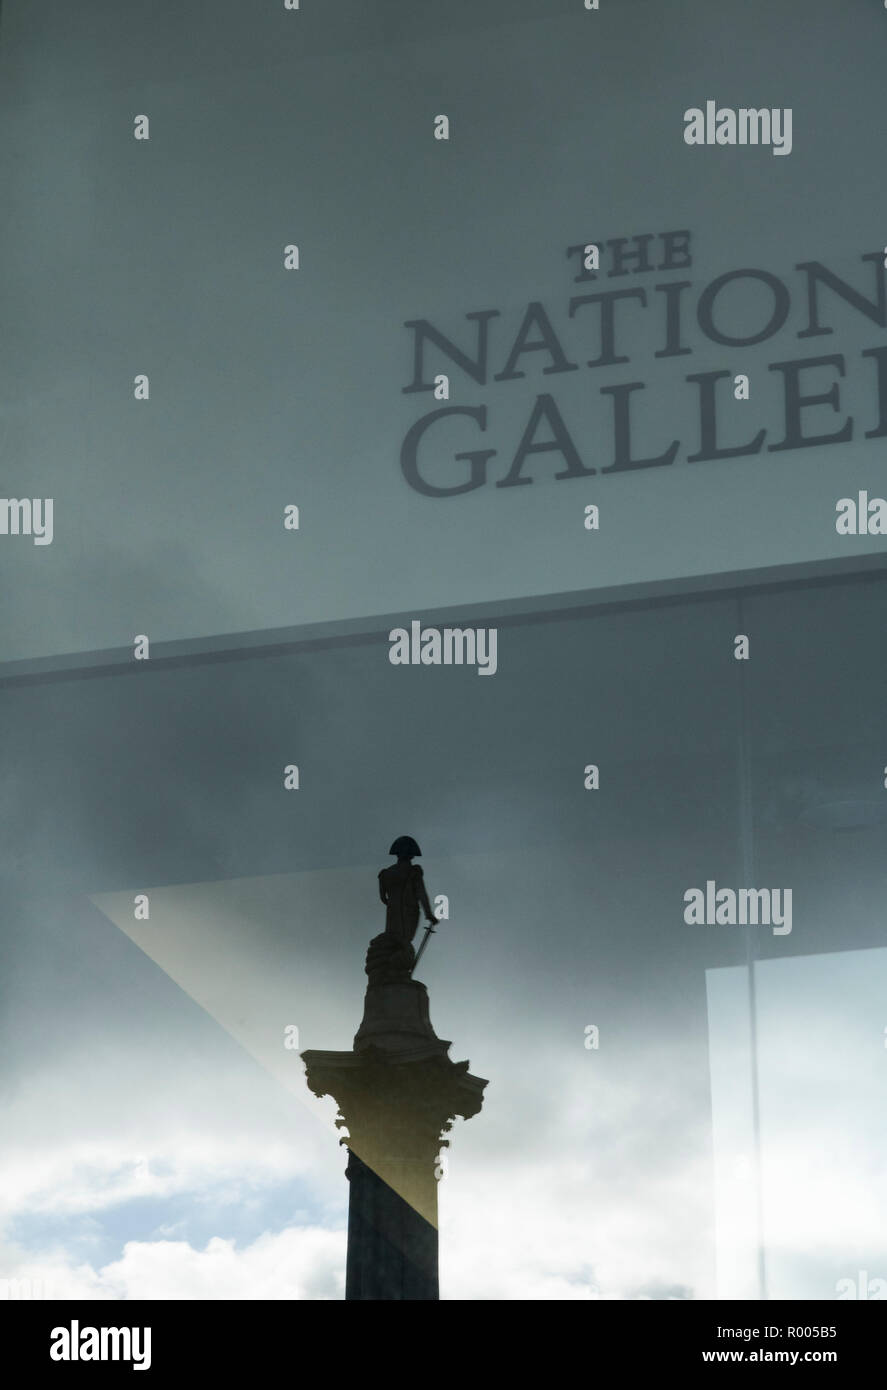 La riflessione di Lord Nelson, National Gallery, Trafalgar Square, Londra Foto Stock